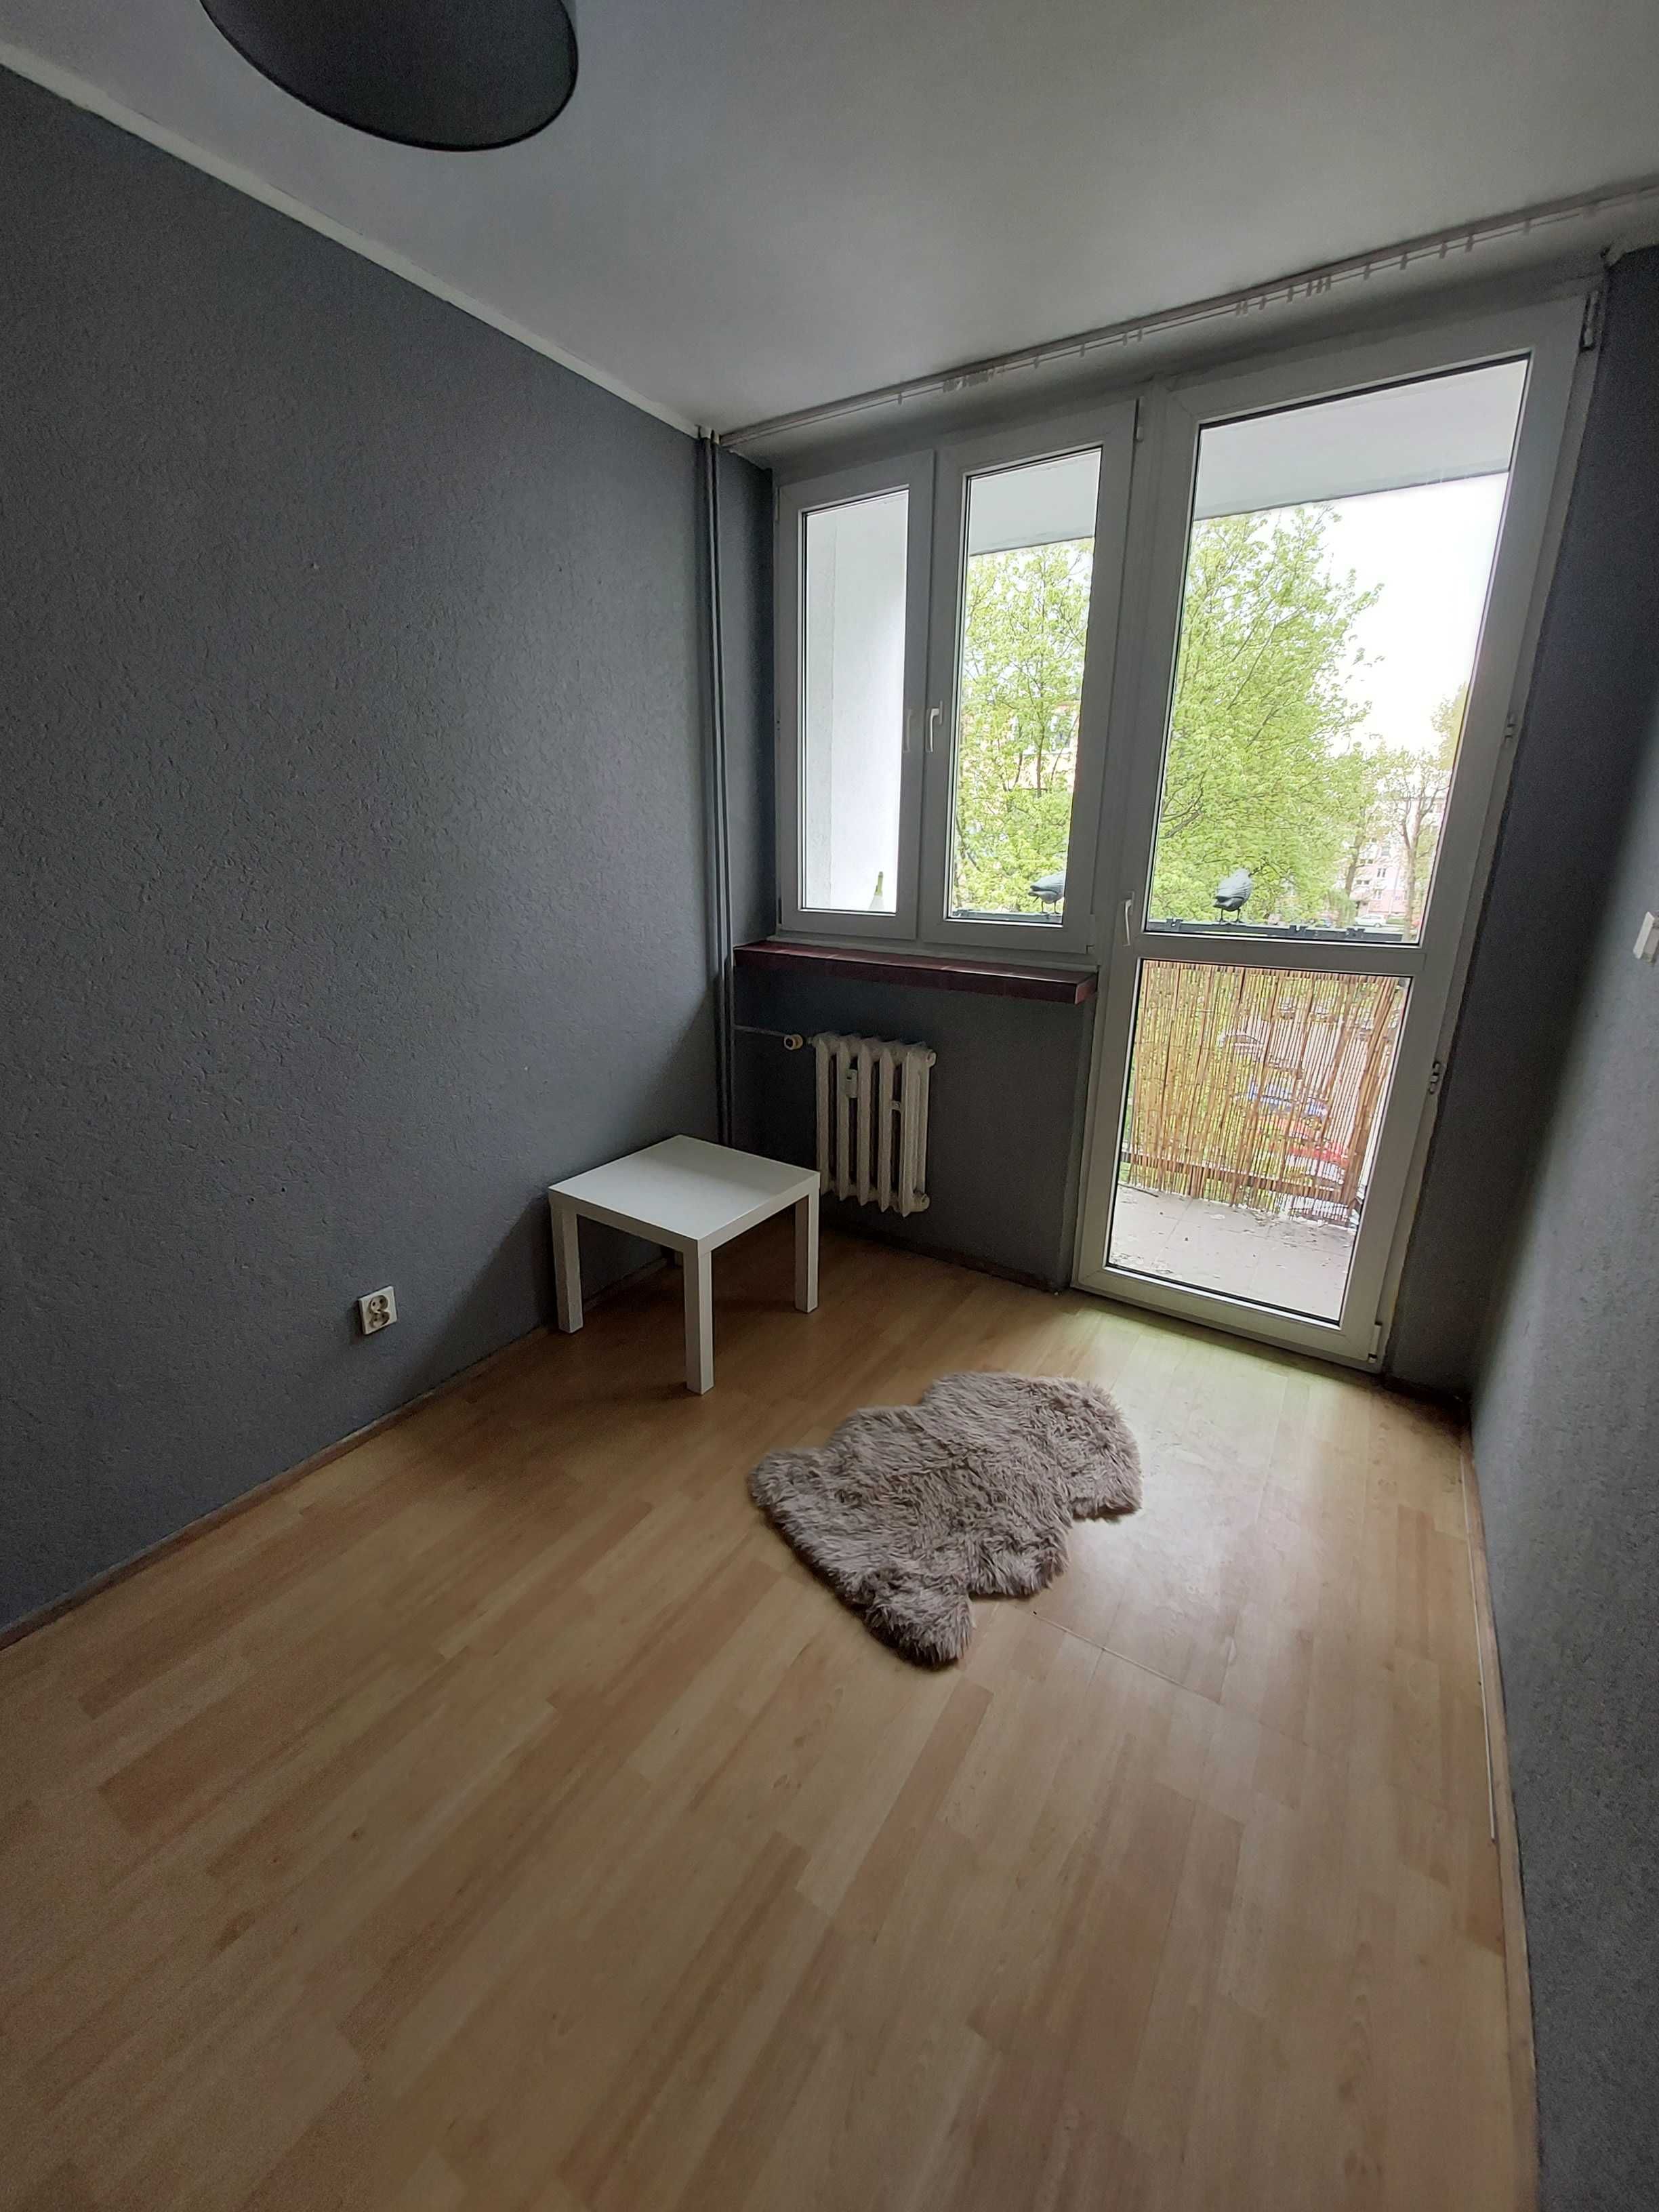 Wynajem 1350 PLN mieszkania Grota Roweckiego w Łodzi 2 pokoje 38m